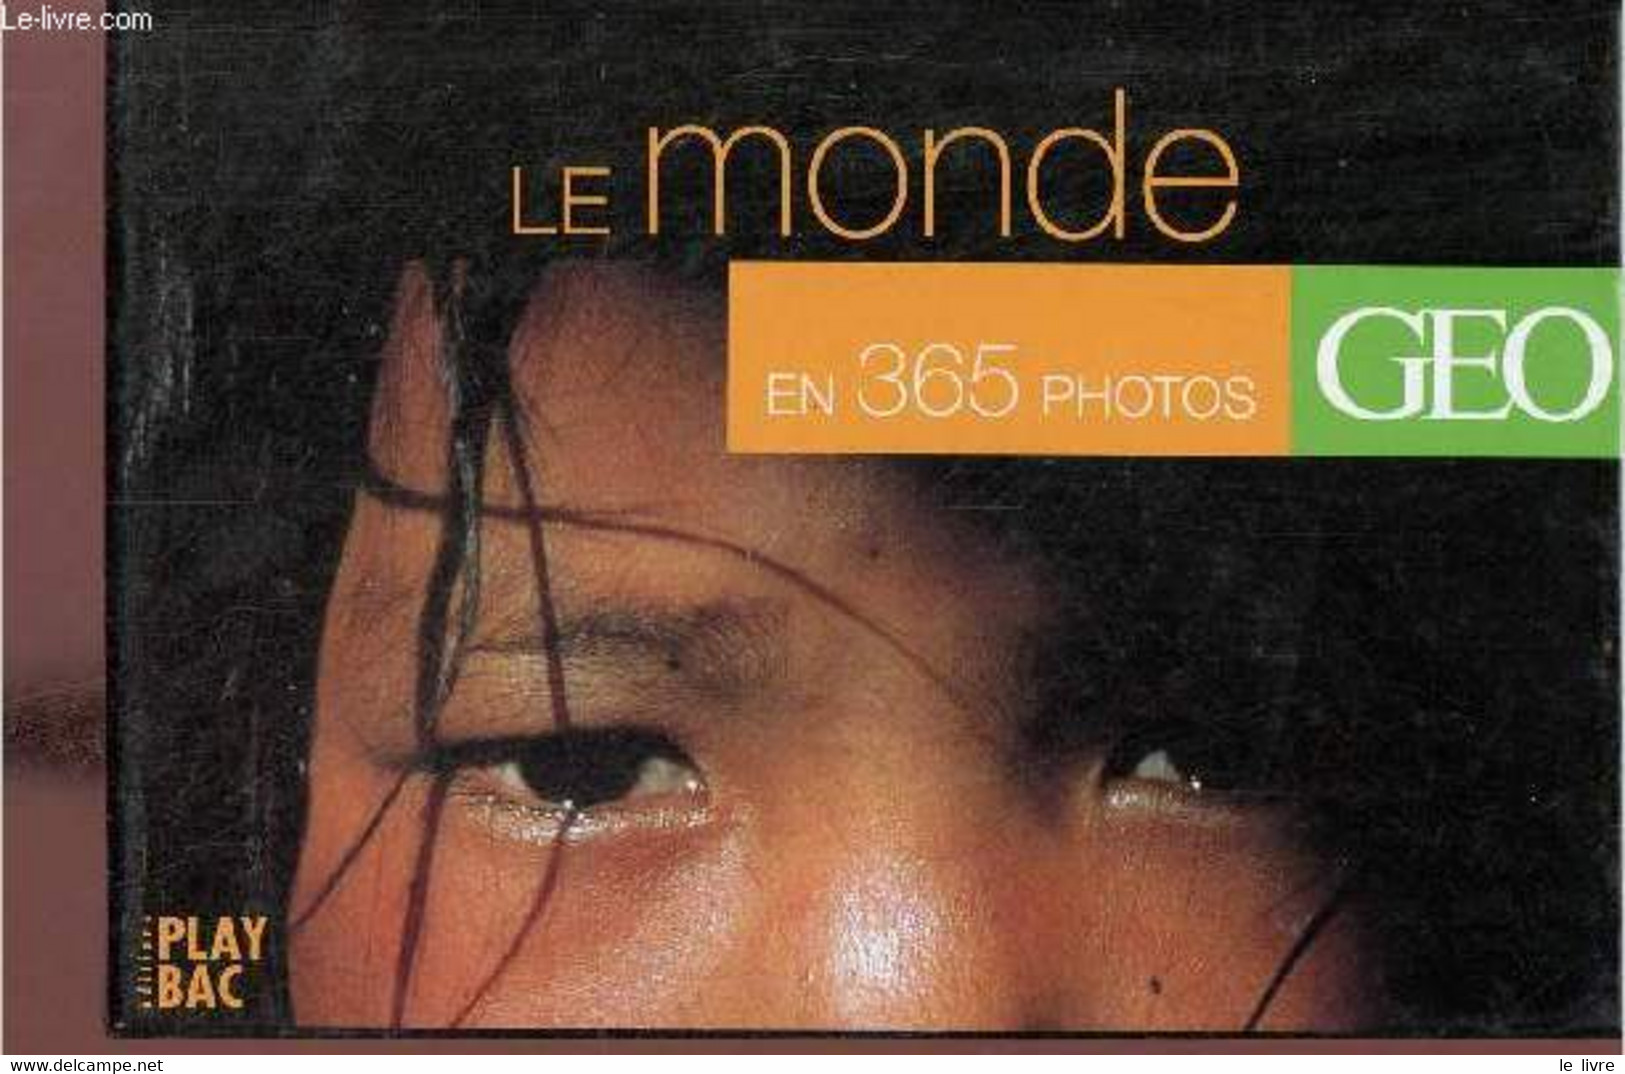 Le Monde En 365 Photos - Geo. - Collectif - 2001 - Agendas